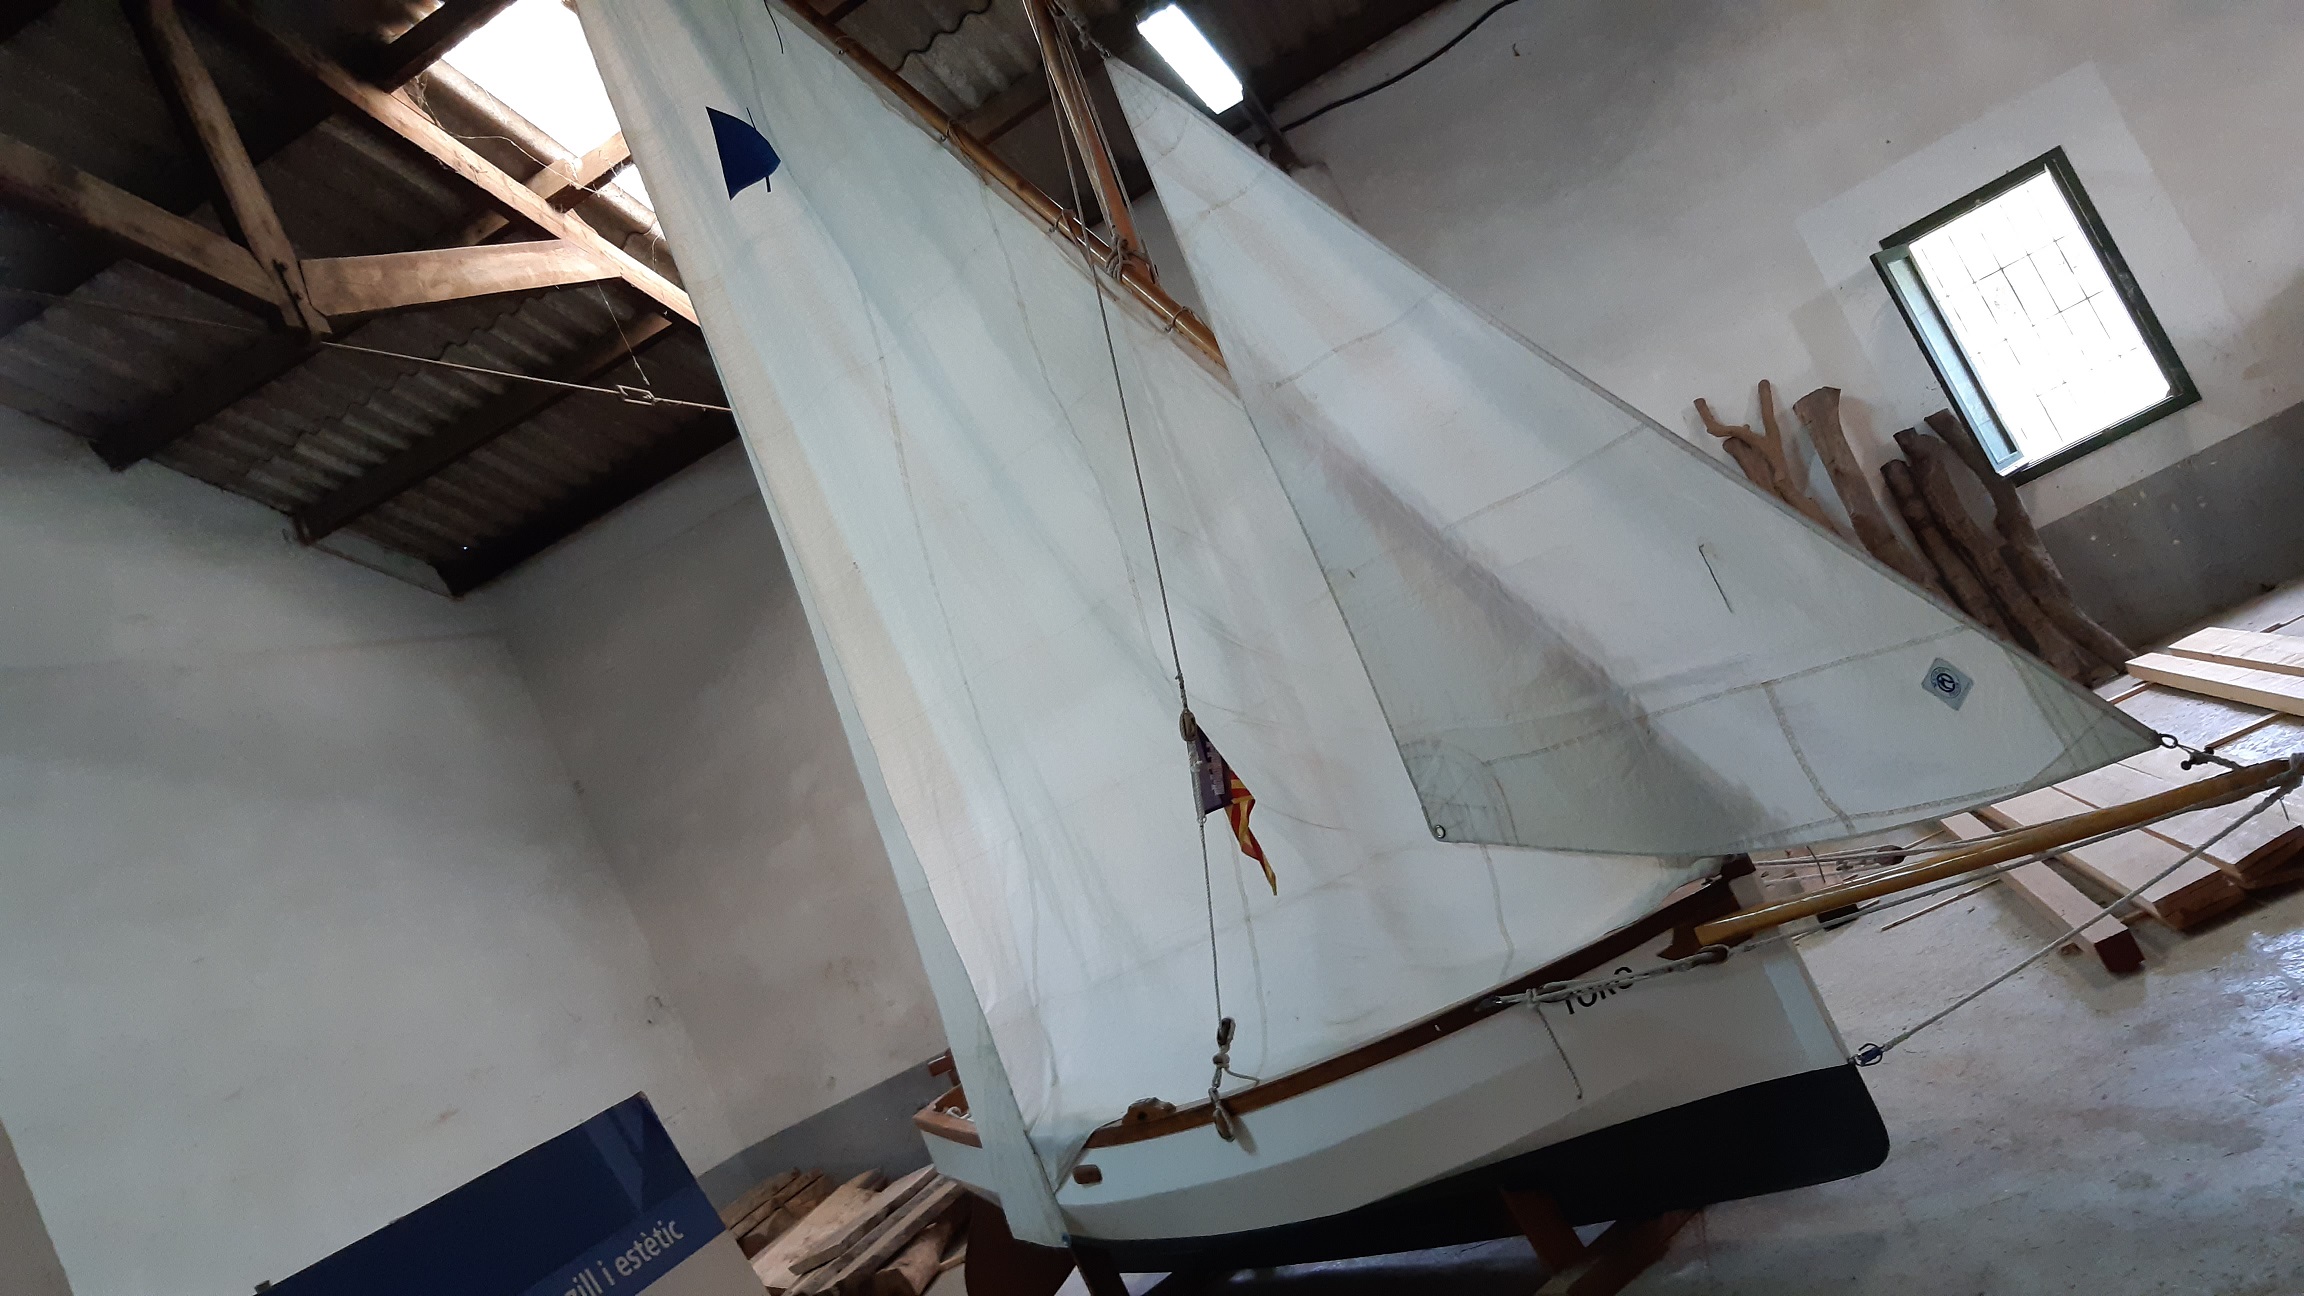 Prototipo de vela latina construido peor 